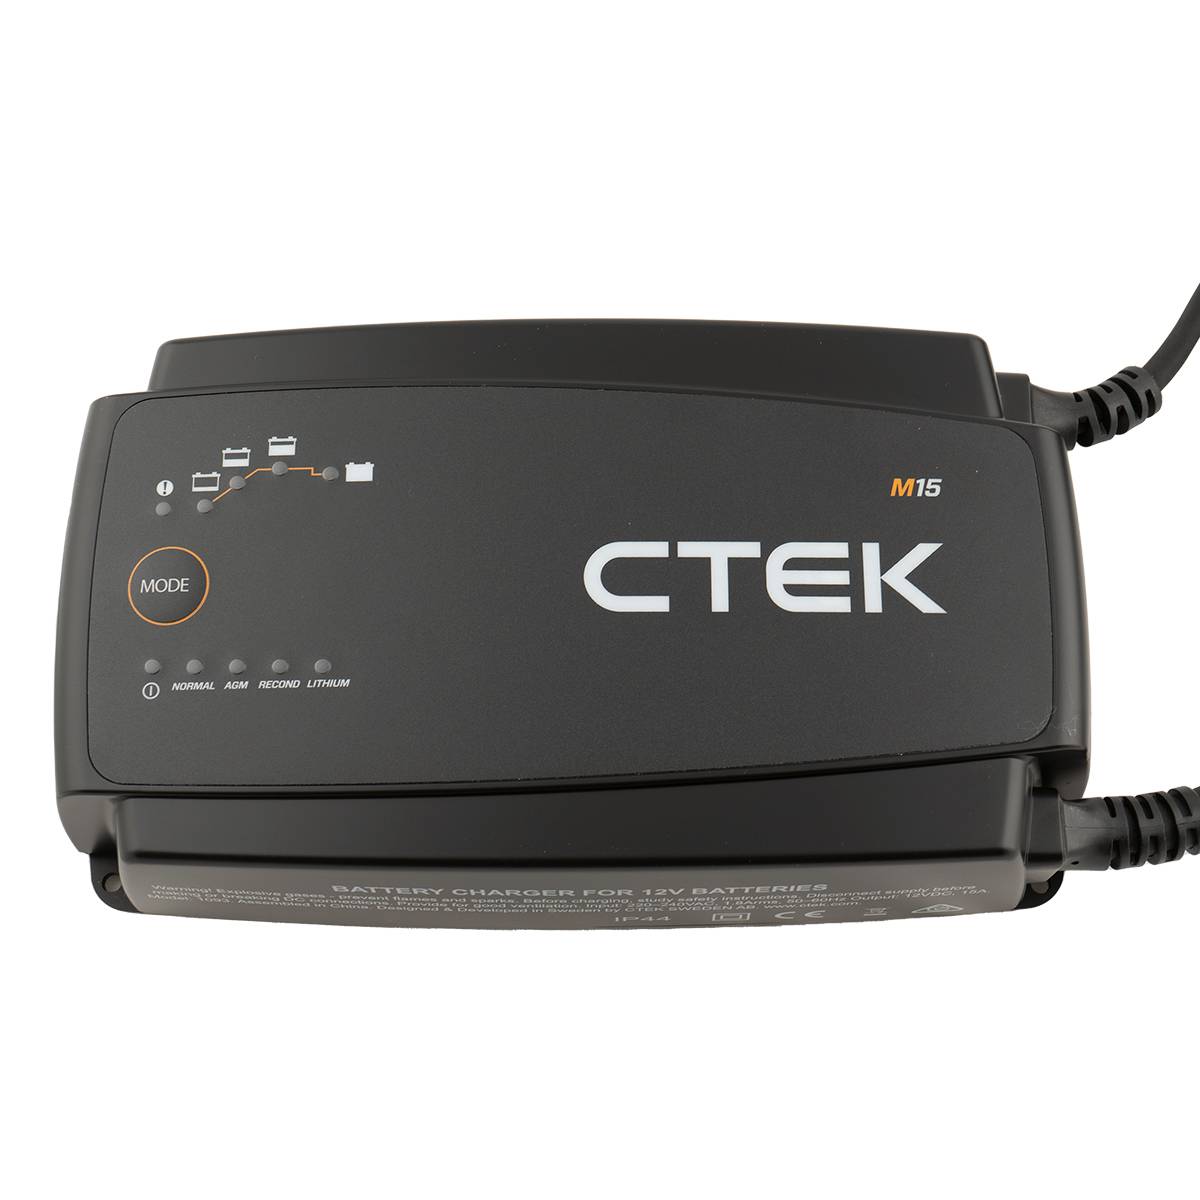 CTEK M15 EU Batterie Ladegerät 15A für 12V für Blei- und Lithium Akkus